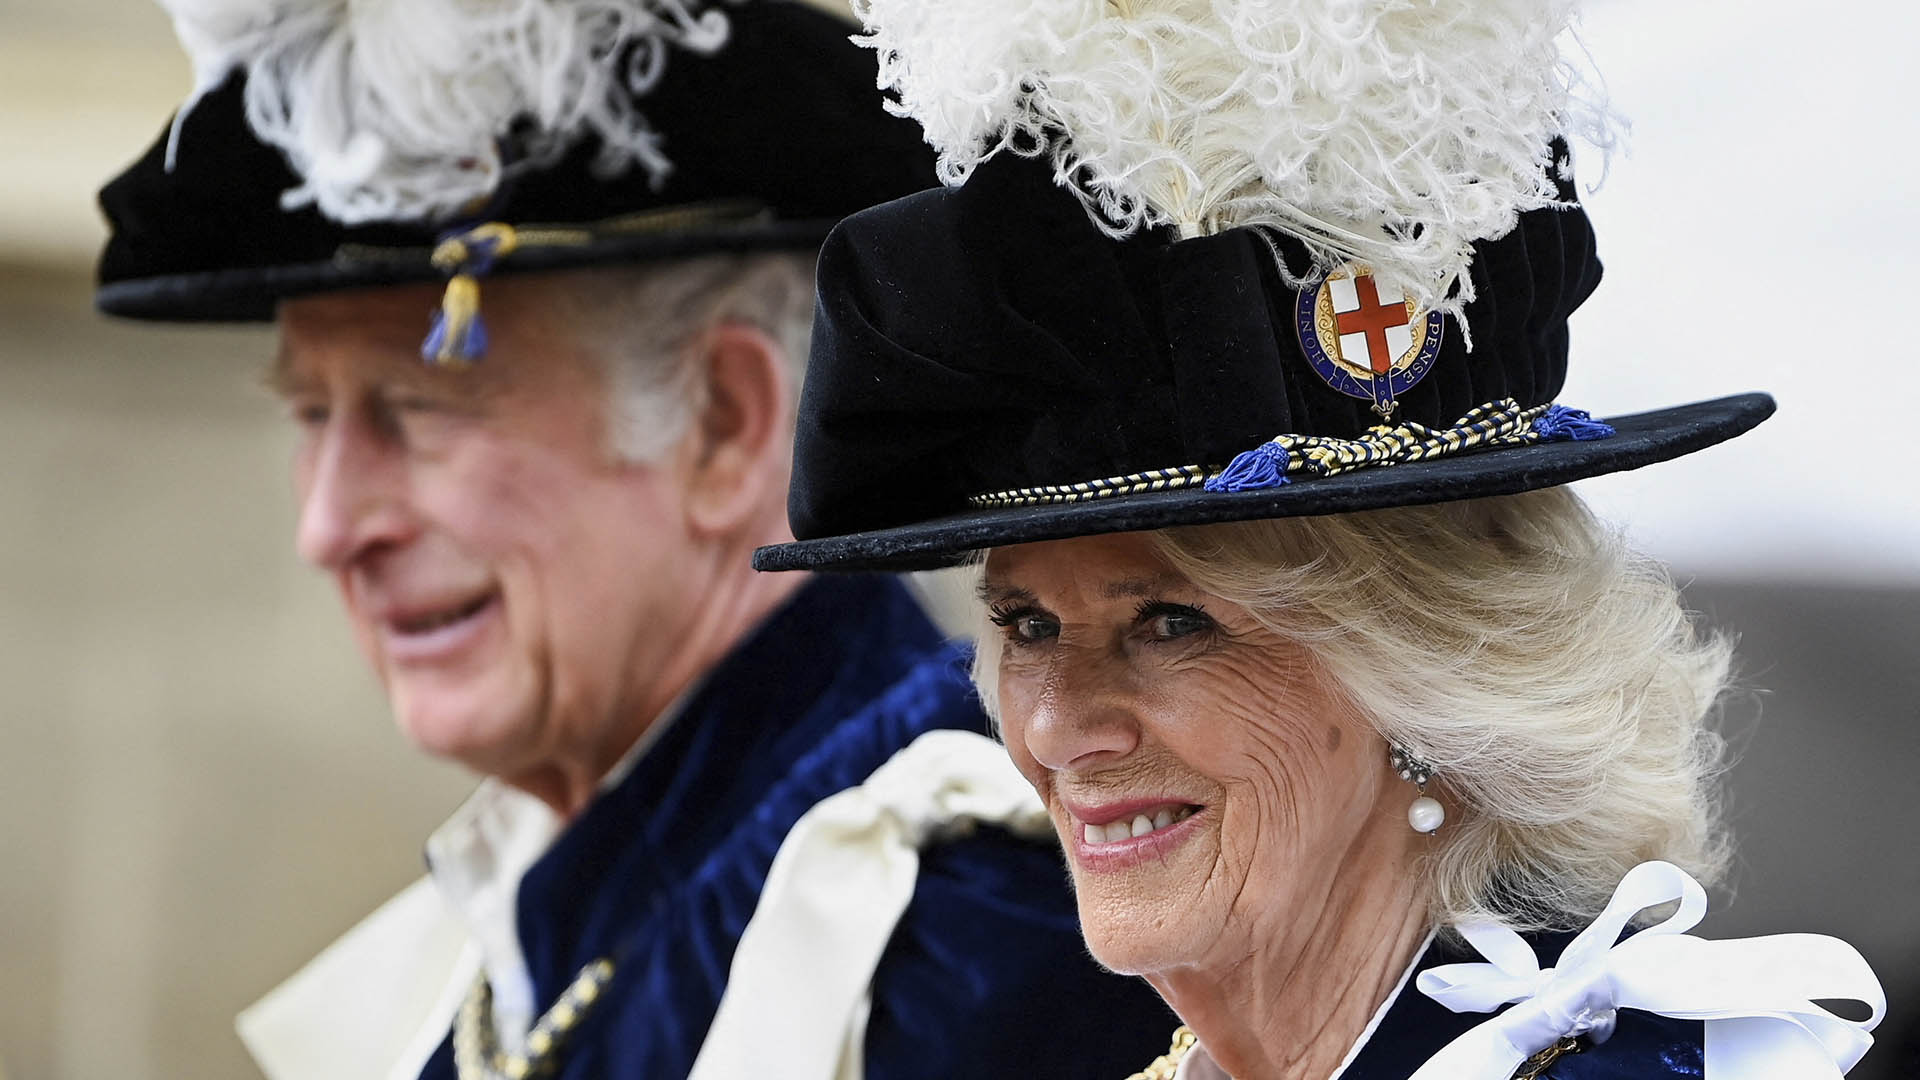 ARCHIVO - El príncipe Carlos de Gran Bretaña y Camila, duquesa de Cornualles llegan para el servicio de la Orden de la Jarretera en el Castillo de Windsor, en Windsor, Inglaterra, el lunes 13 de junio de 2022. (Toby Melville/Pool Photo vía AP, archivo)
